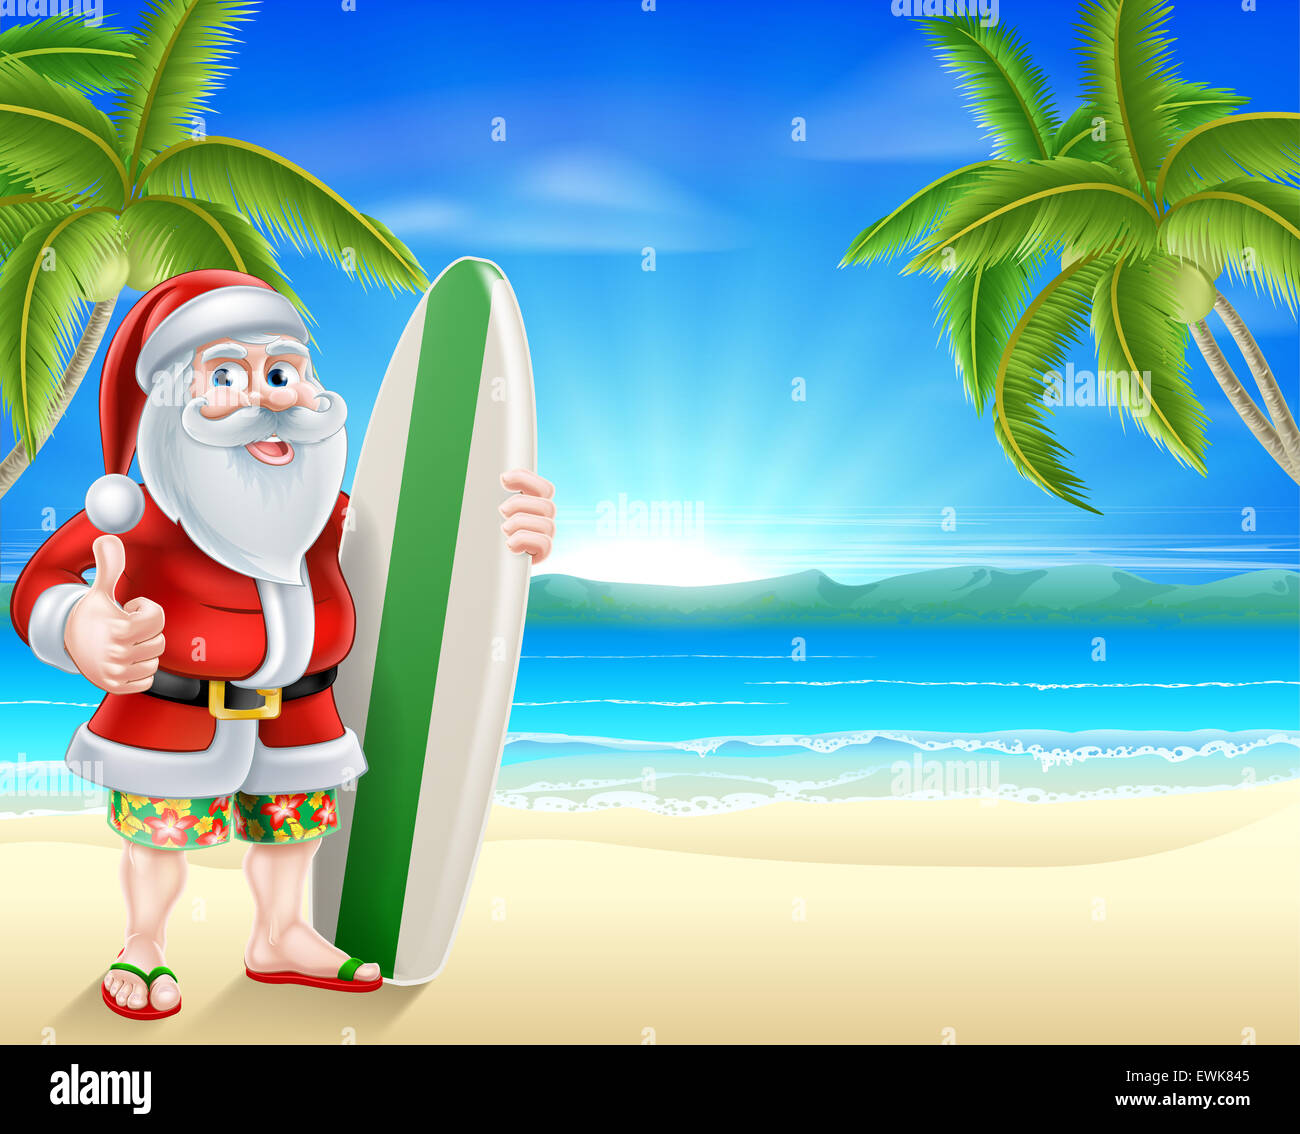 Cartoon di Santa Claus in possesso di una tavola da surf e dando un pollice in alto nella sua scheda di Hawaiian shorts e flip flop sandali su un tropi Foto Stock